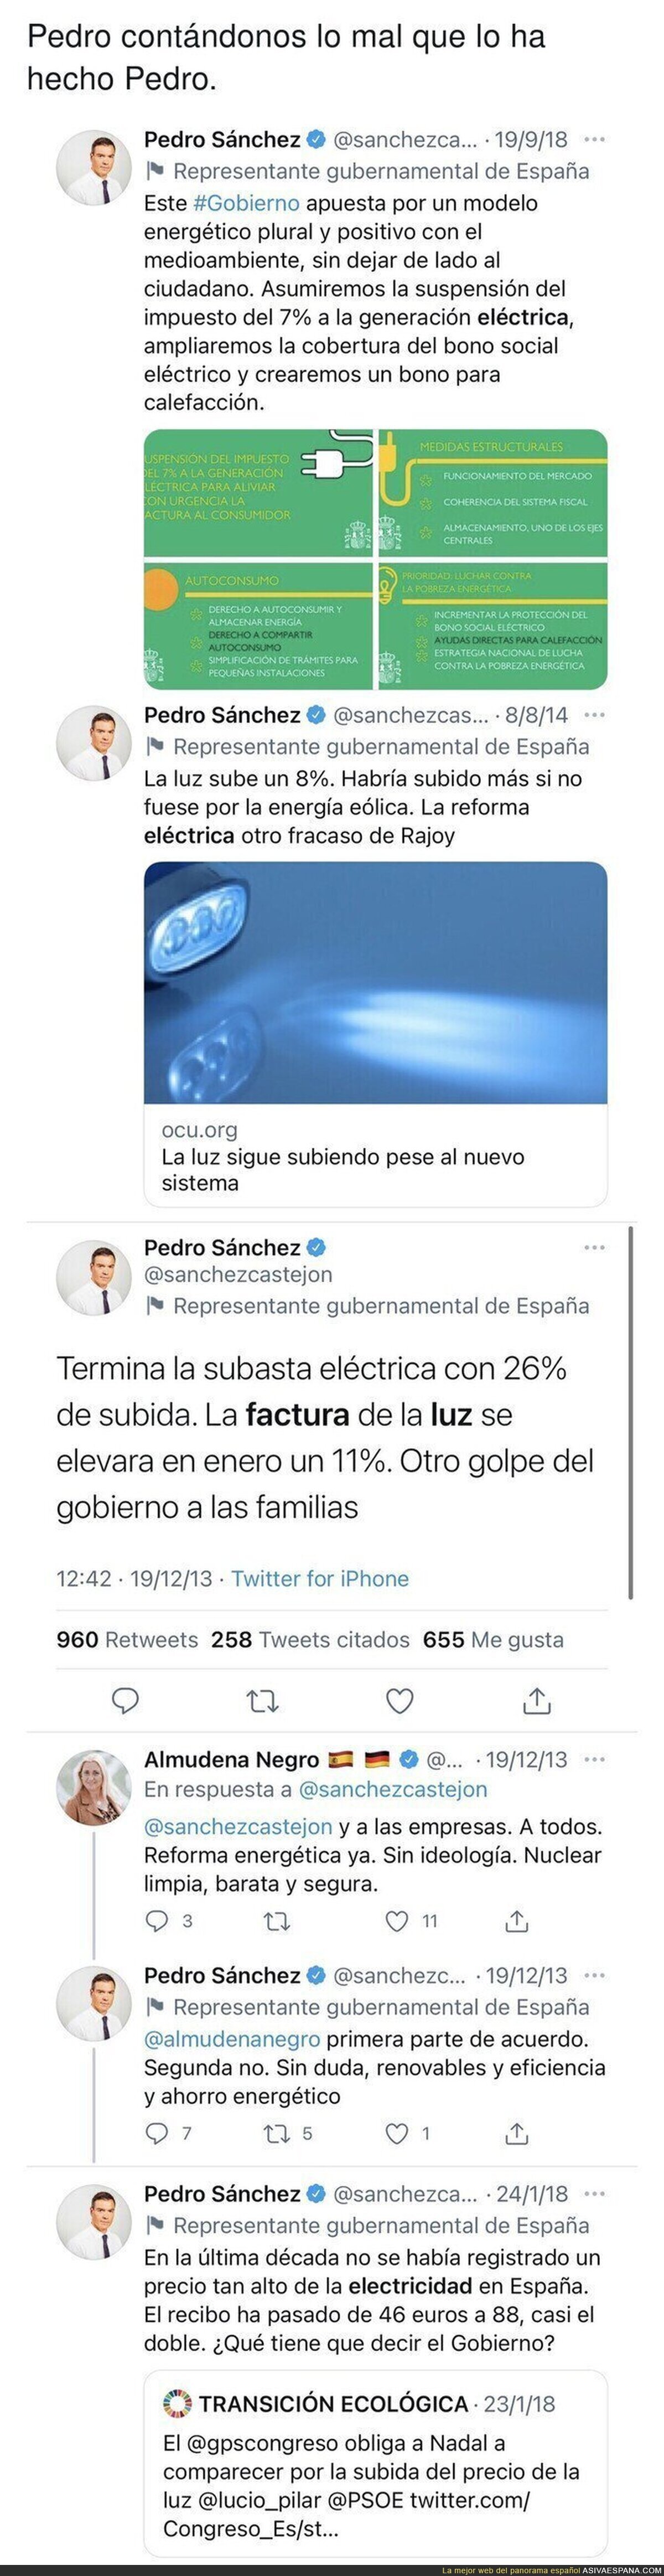 Todos estos tuits del pasado de Pedro Sánchez le dejan totalmente mal con la situación que está pasando en 2021